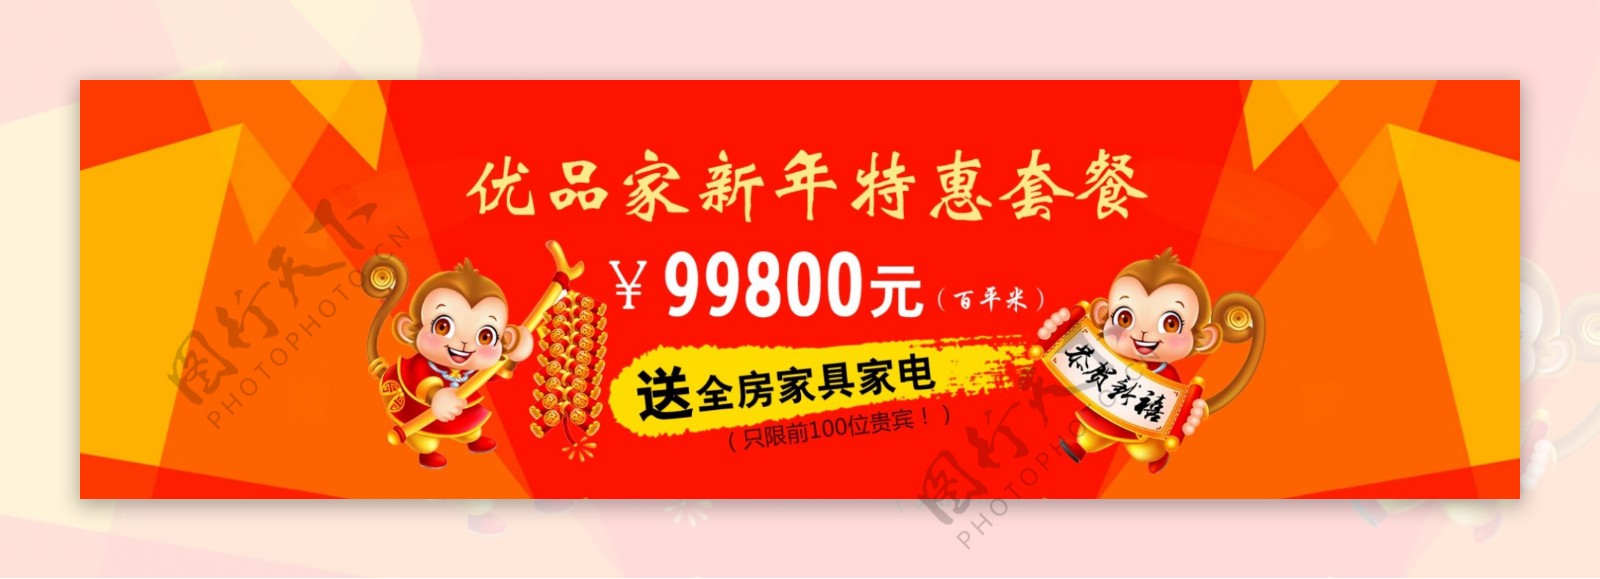 家装新年优惠套餐广告pc版banner